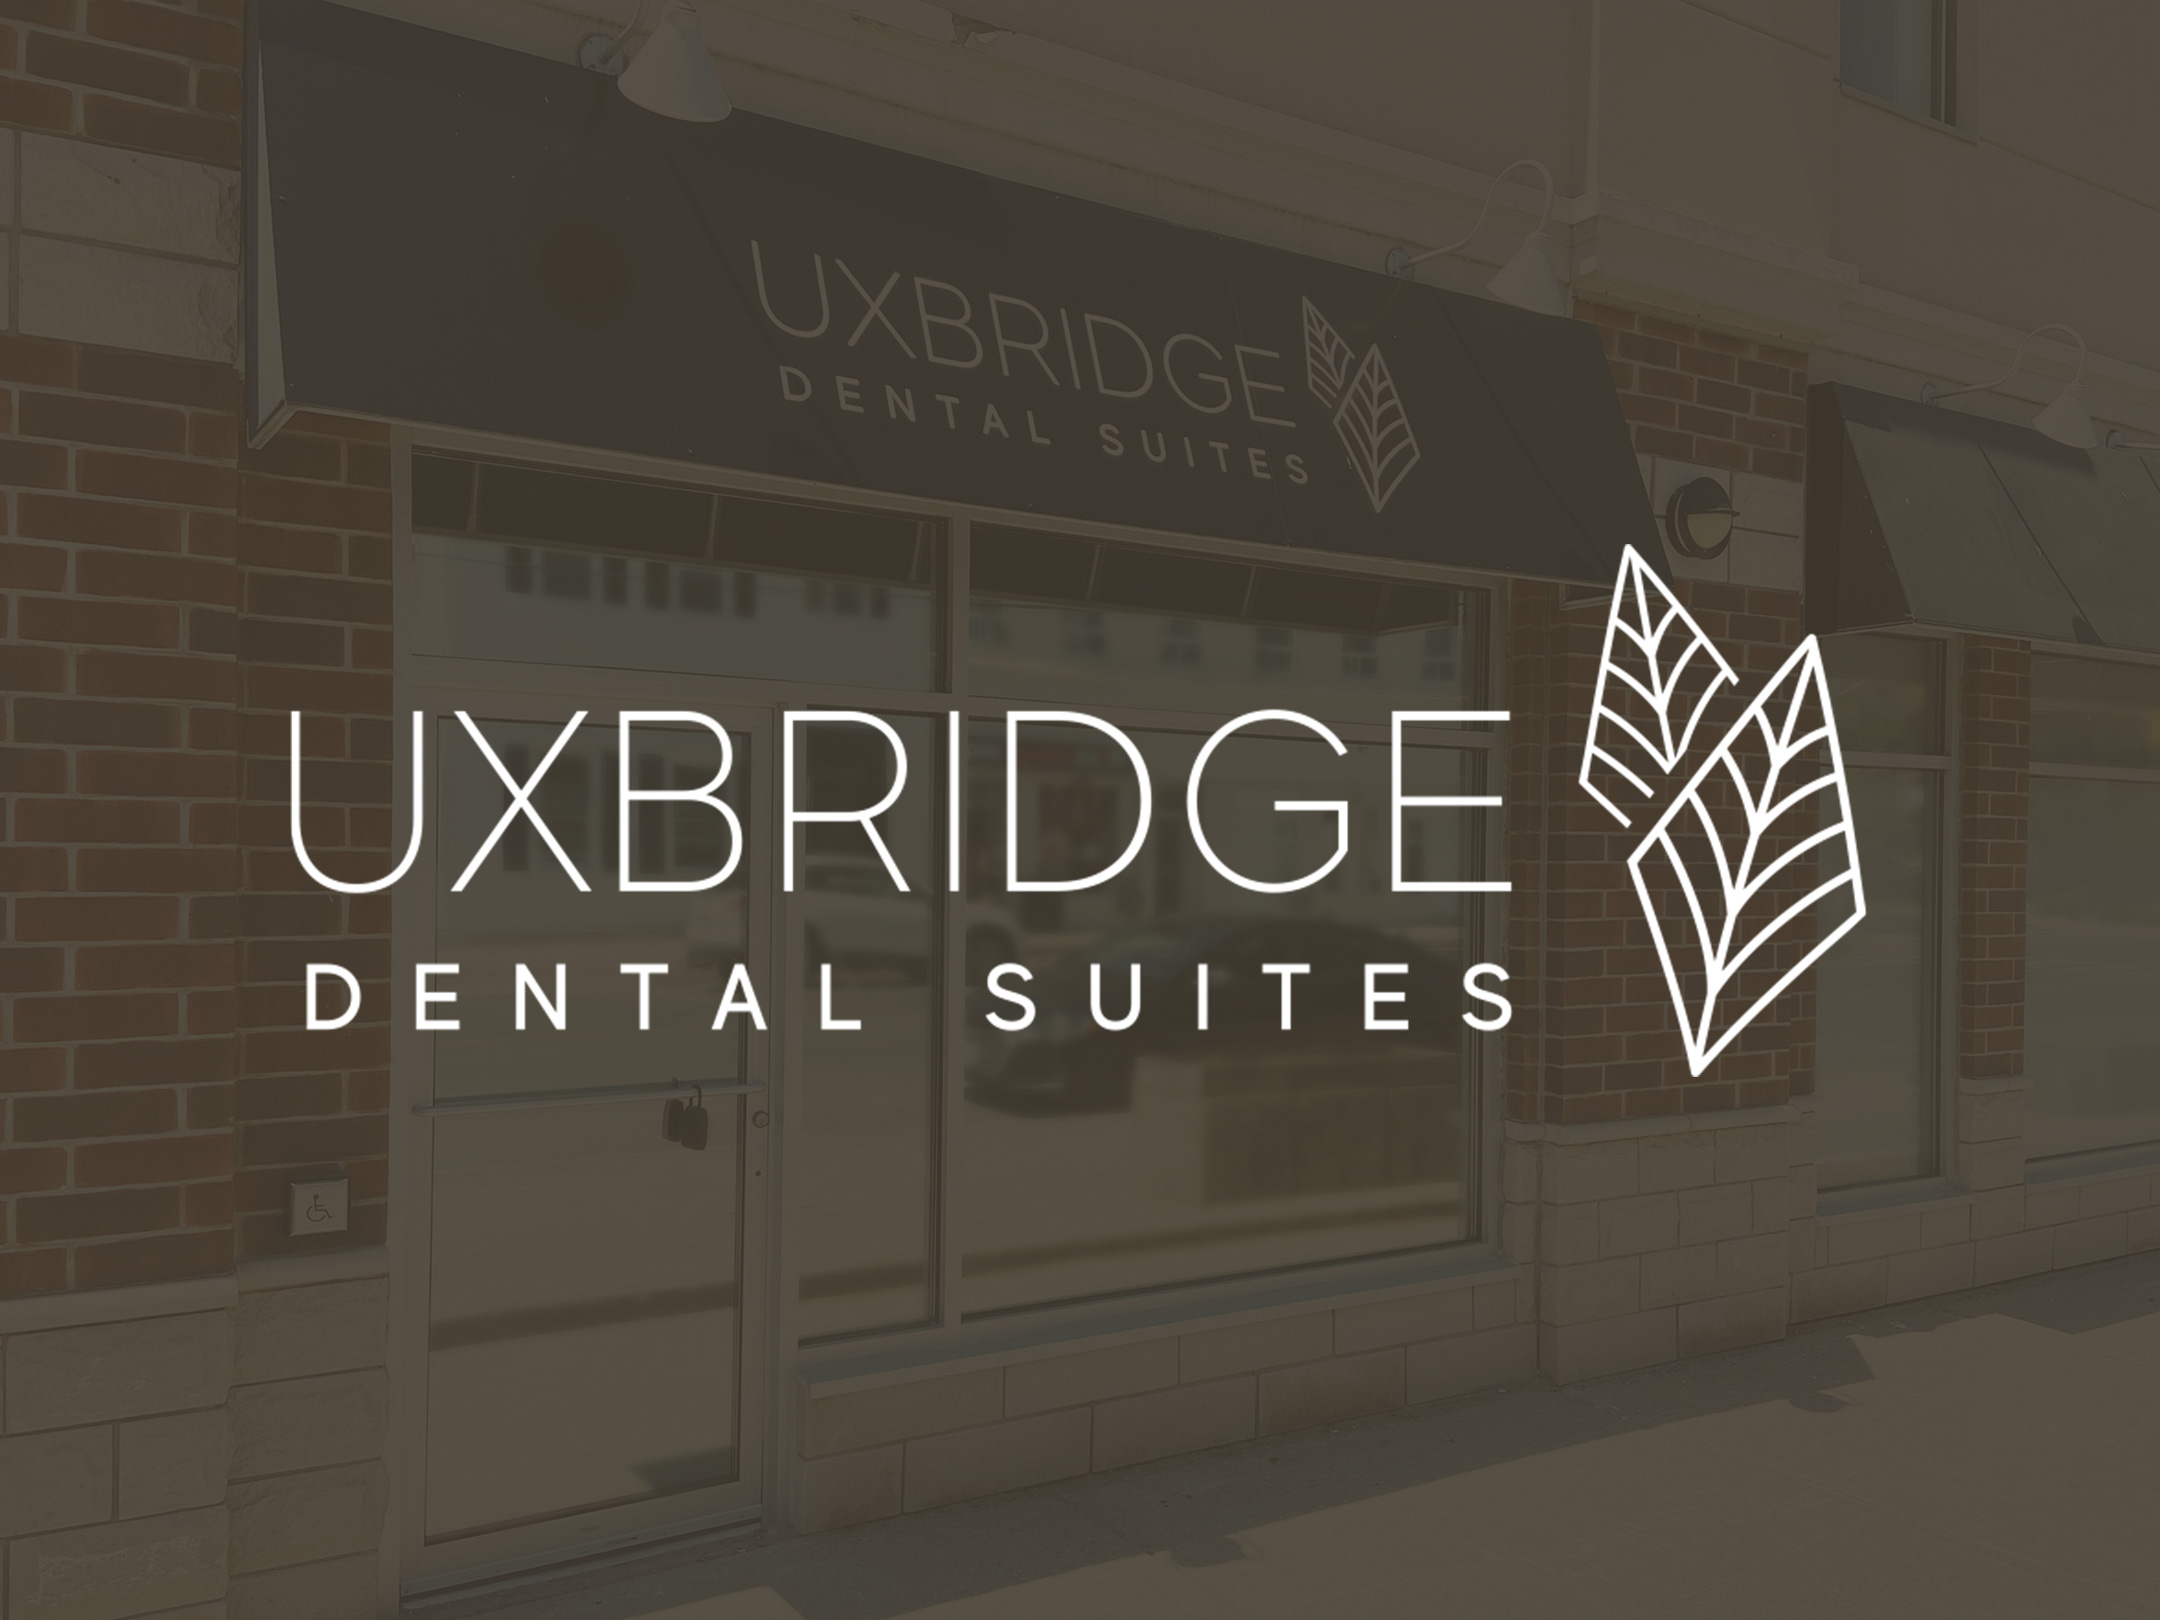 uxbridge-dental-suites-logo-storefront-design